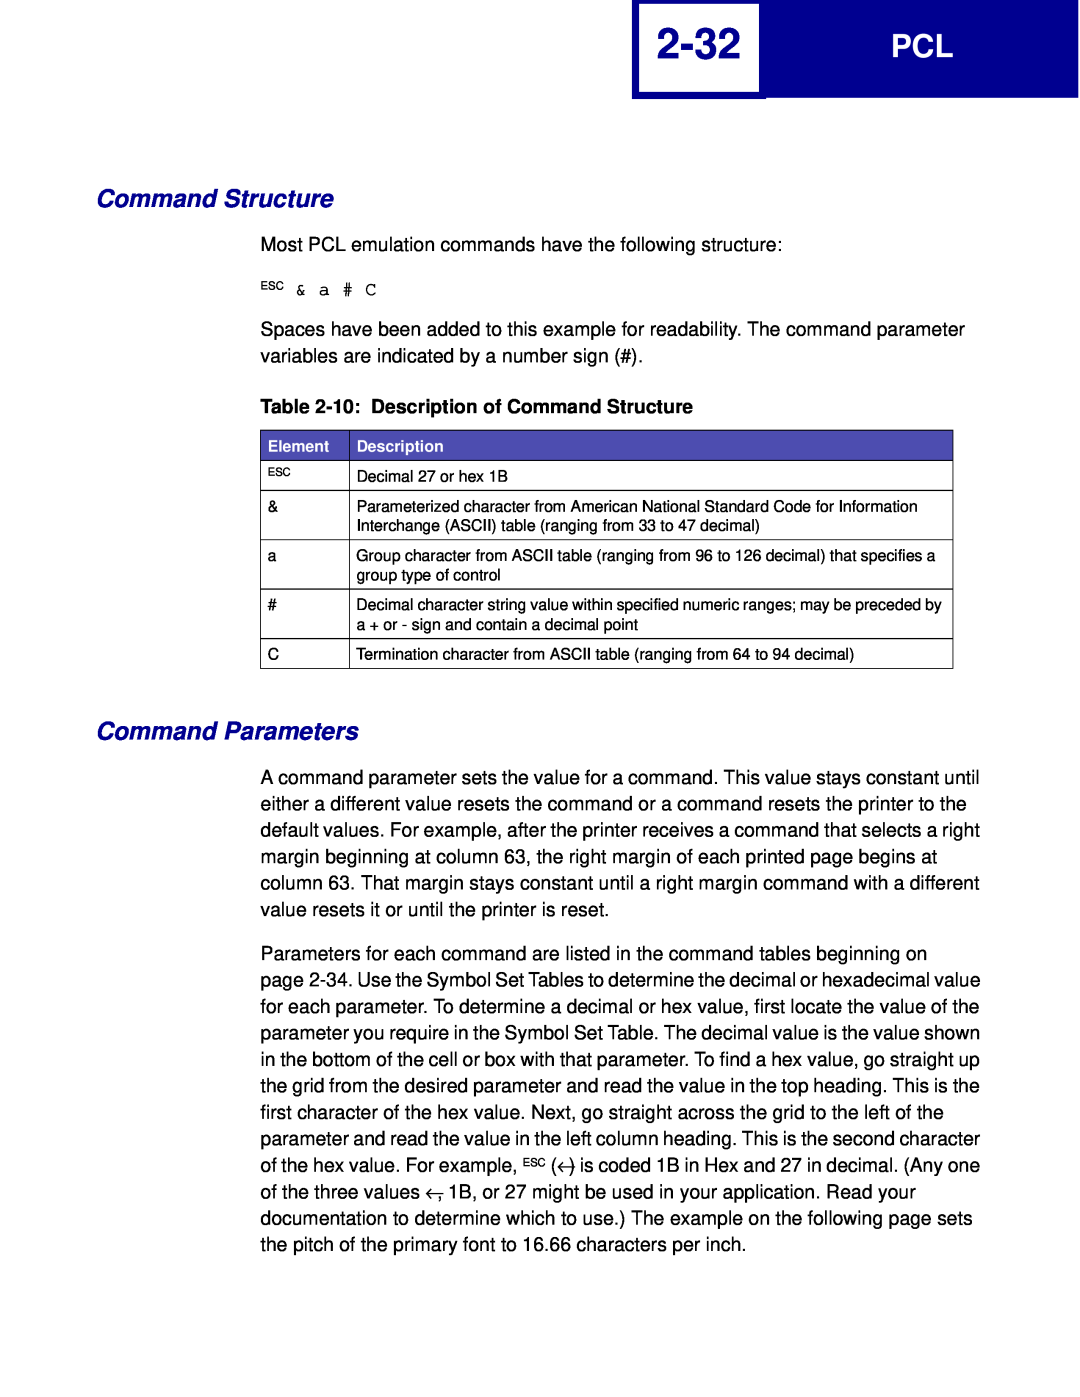 Lexmark C760, C762 manual 2-32, Command Parameters, 10 Description of Command Structure 